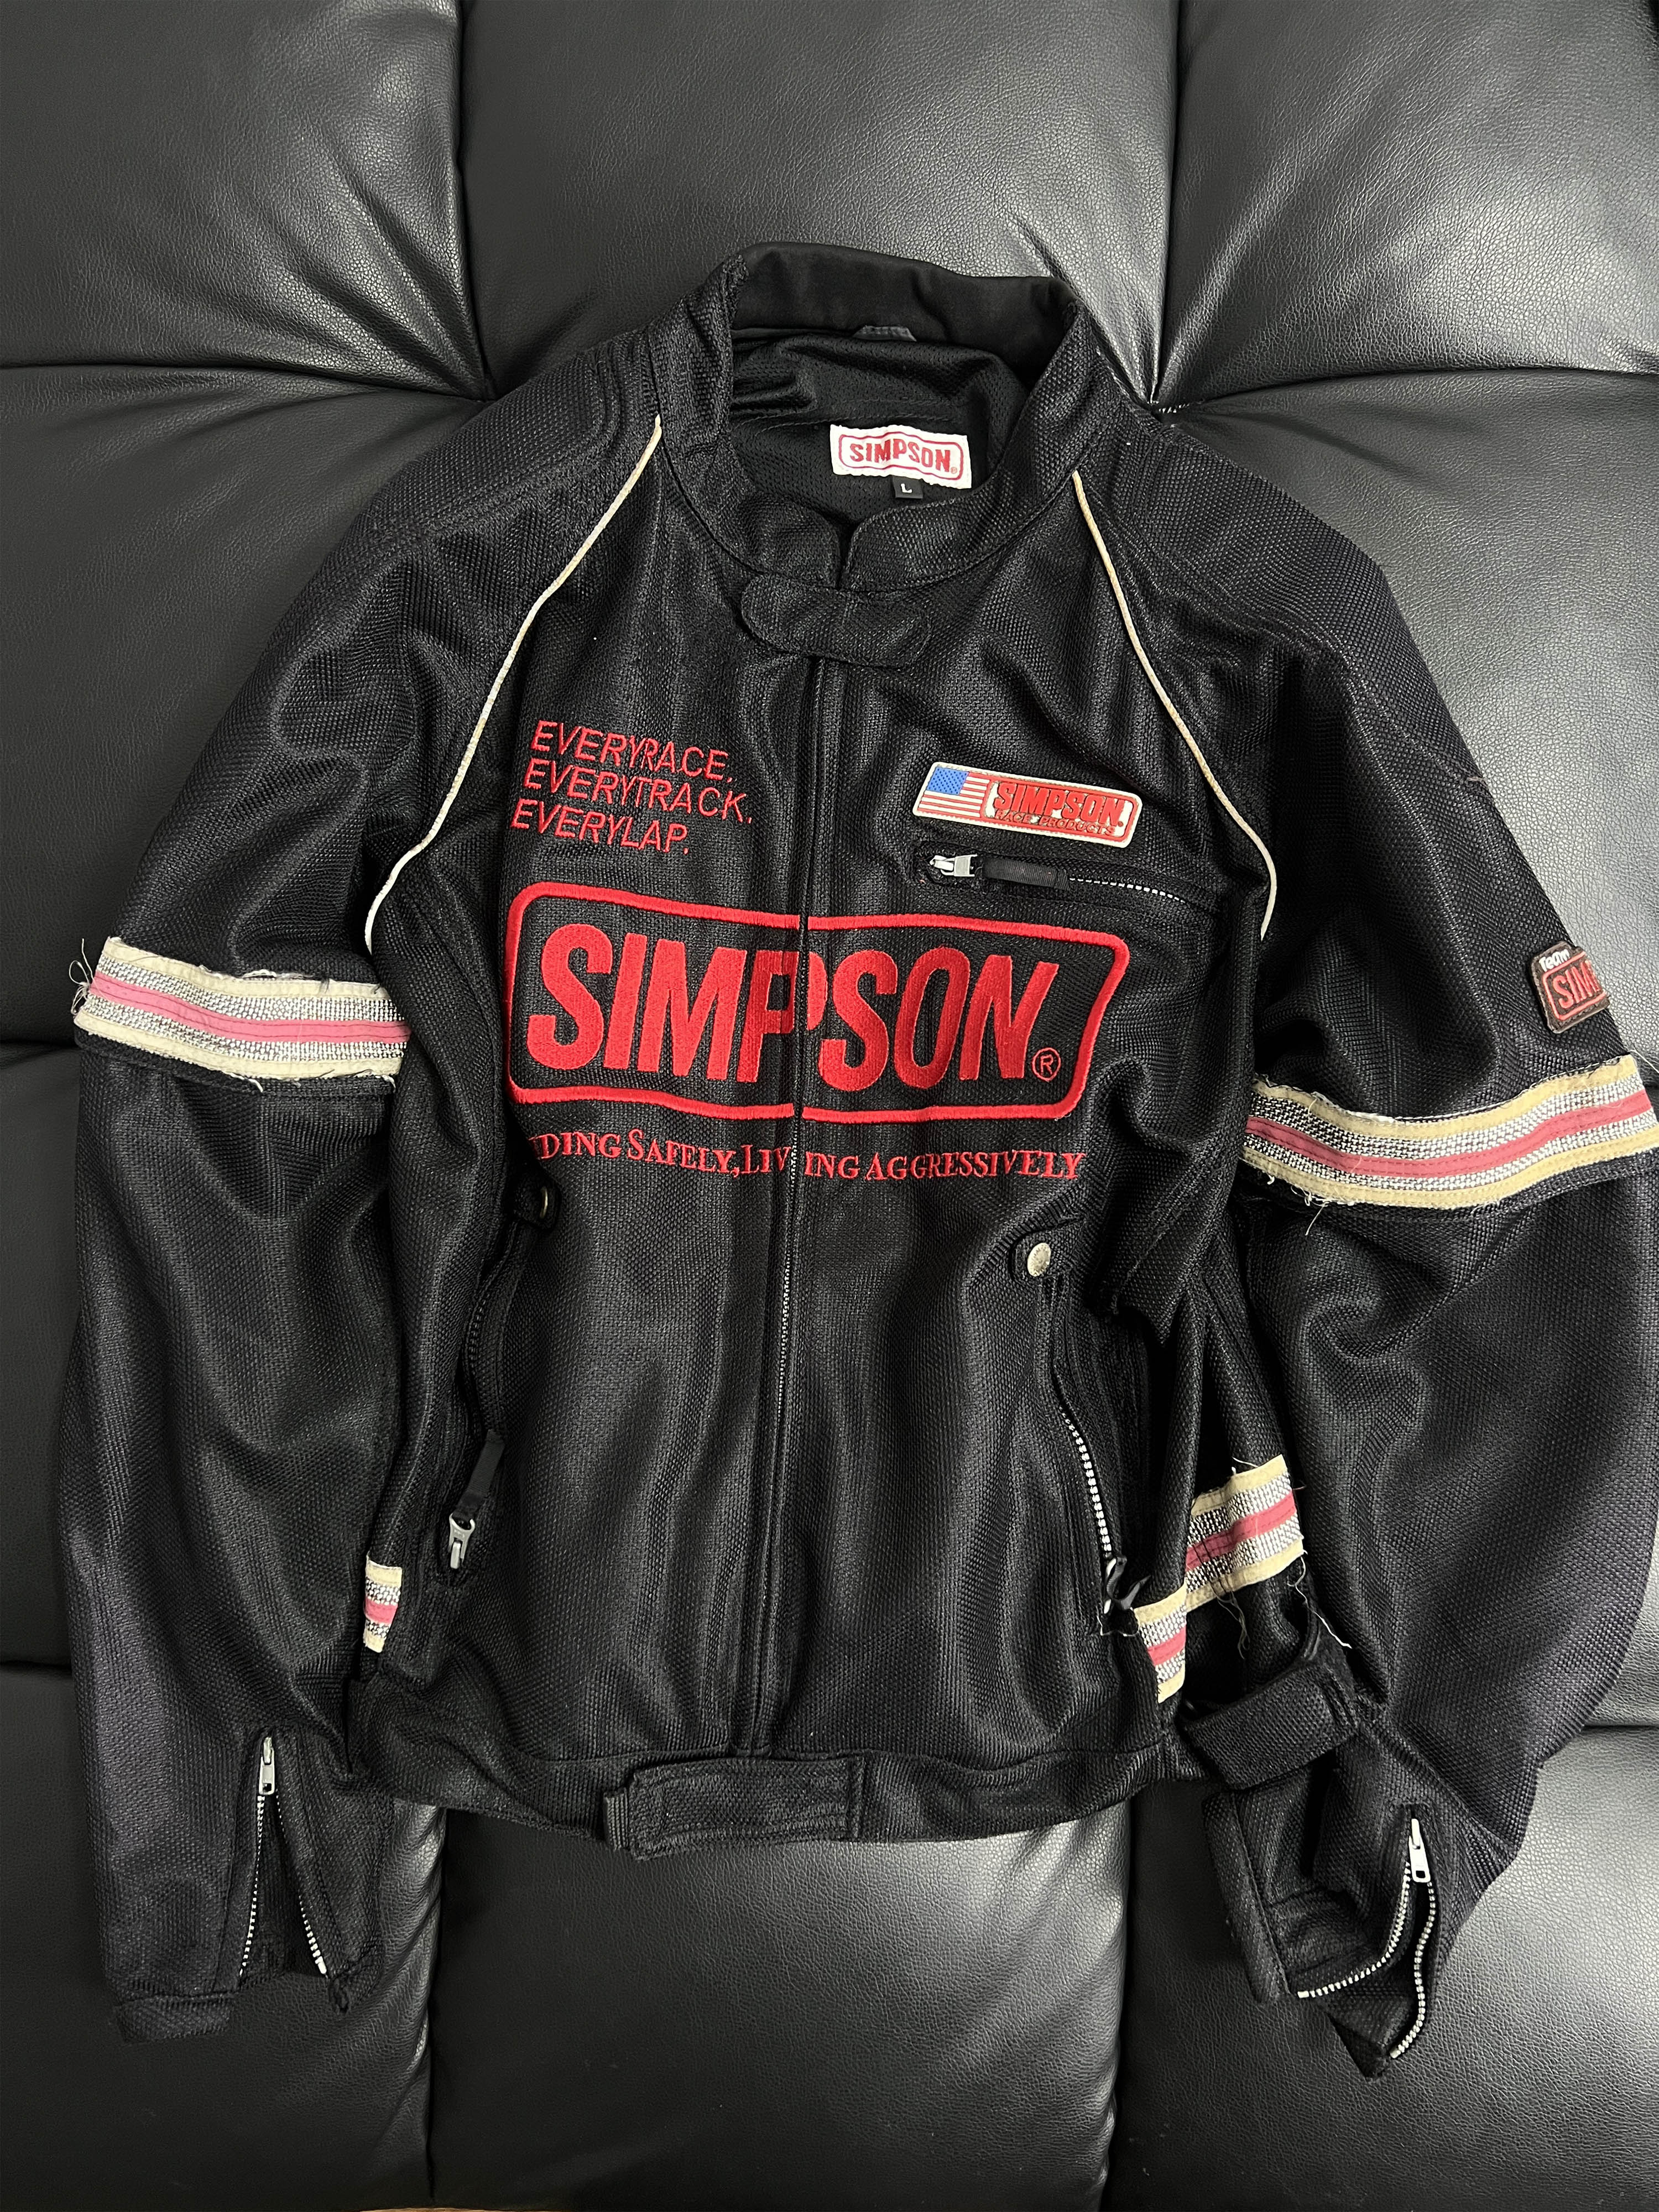 SIMPSIN racing jacket